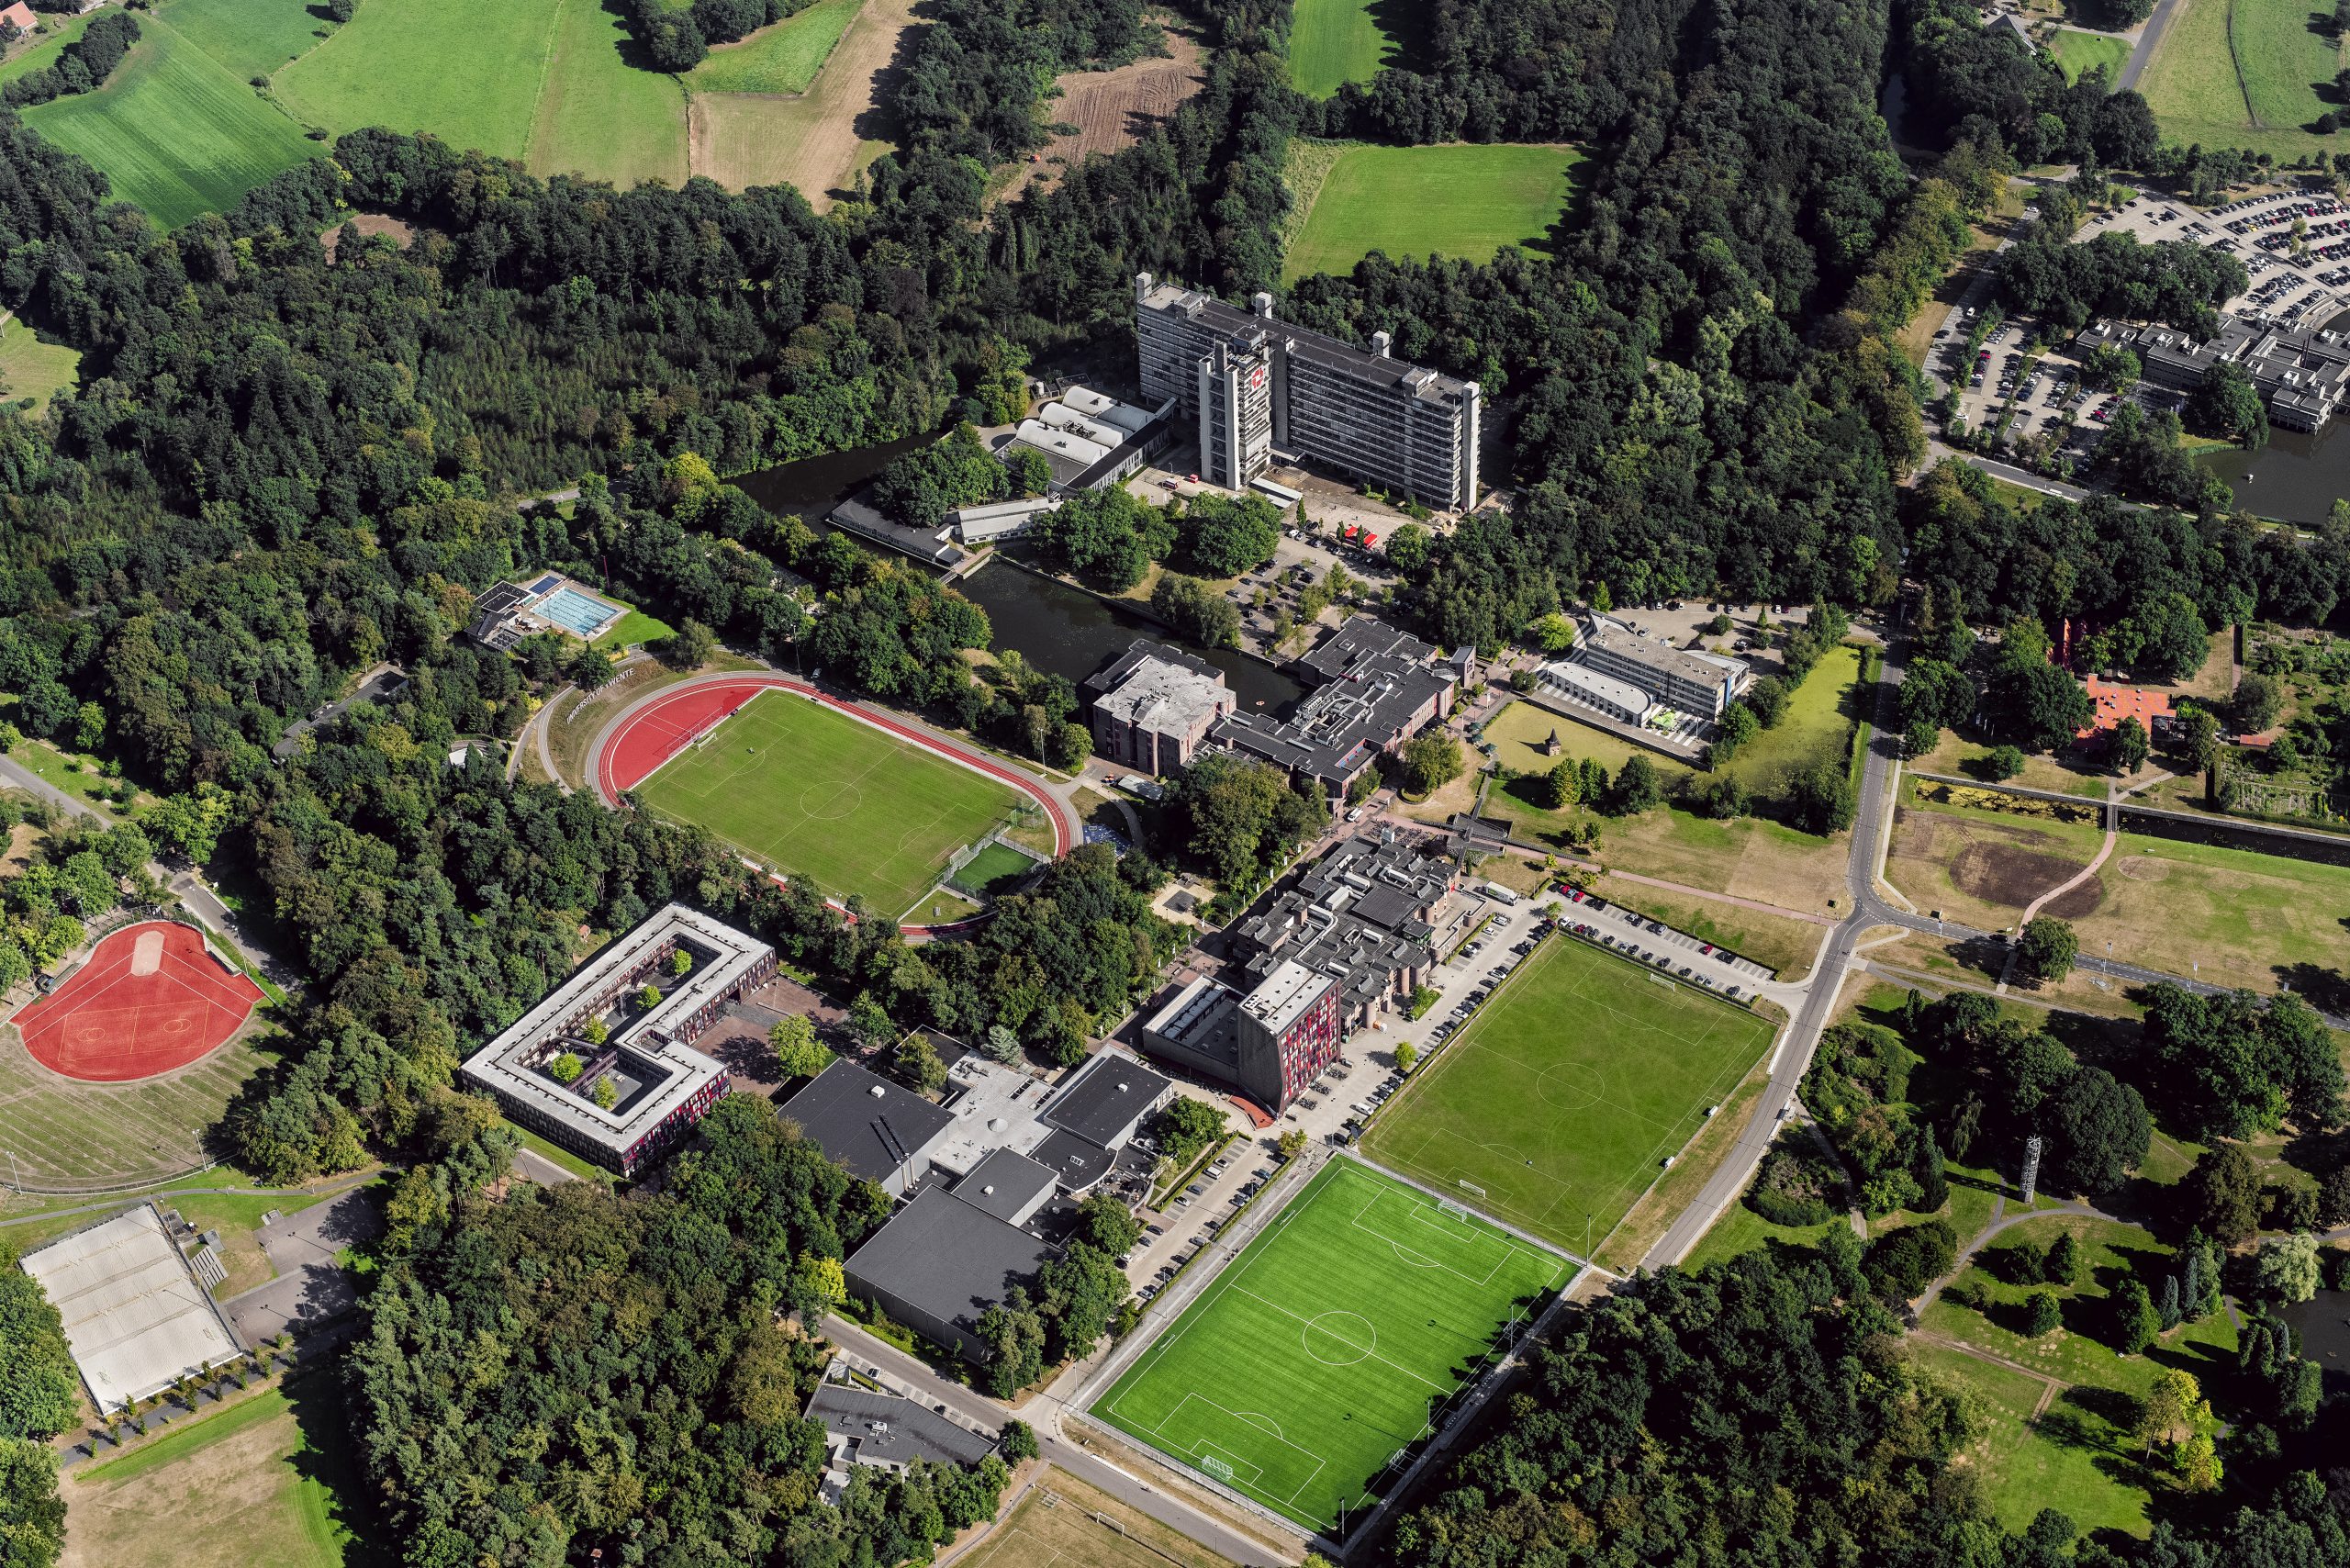 Foto: Luchtfoto van de Universiteit Twente in Enschede. Bron: ANP/John Gundlach